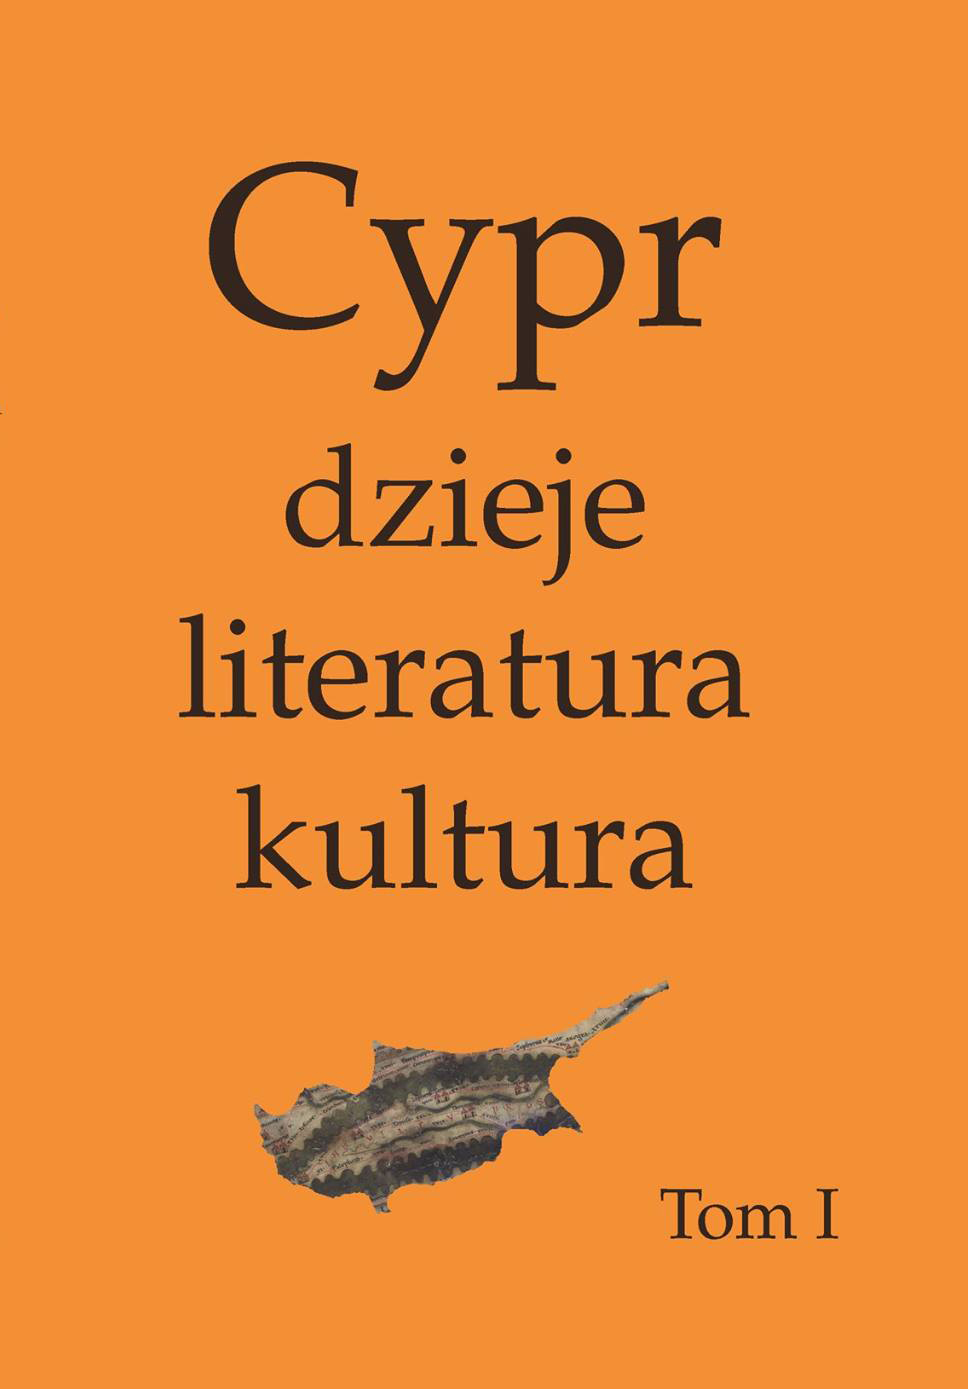 Cypr: dzieje, literatura, kultura, vols I-II